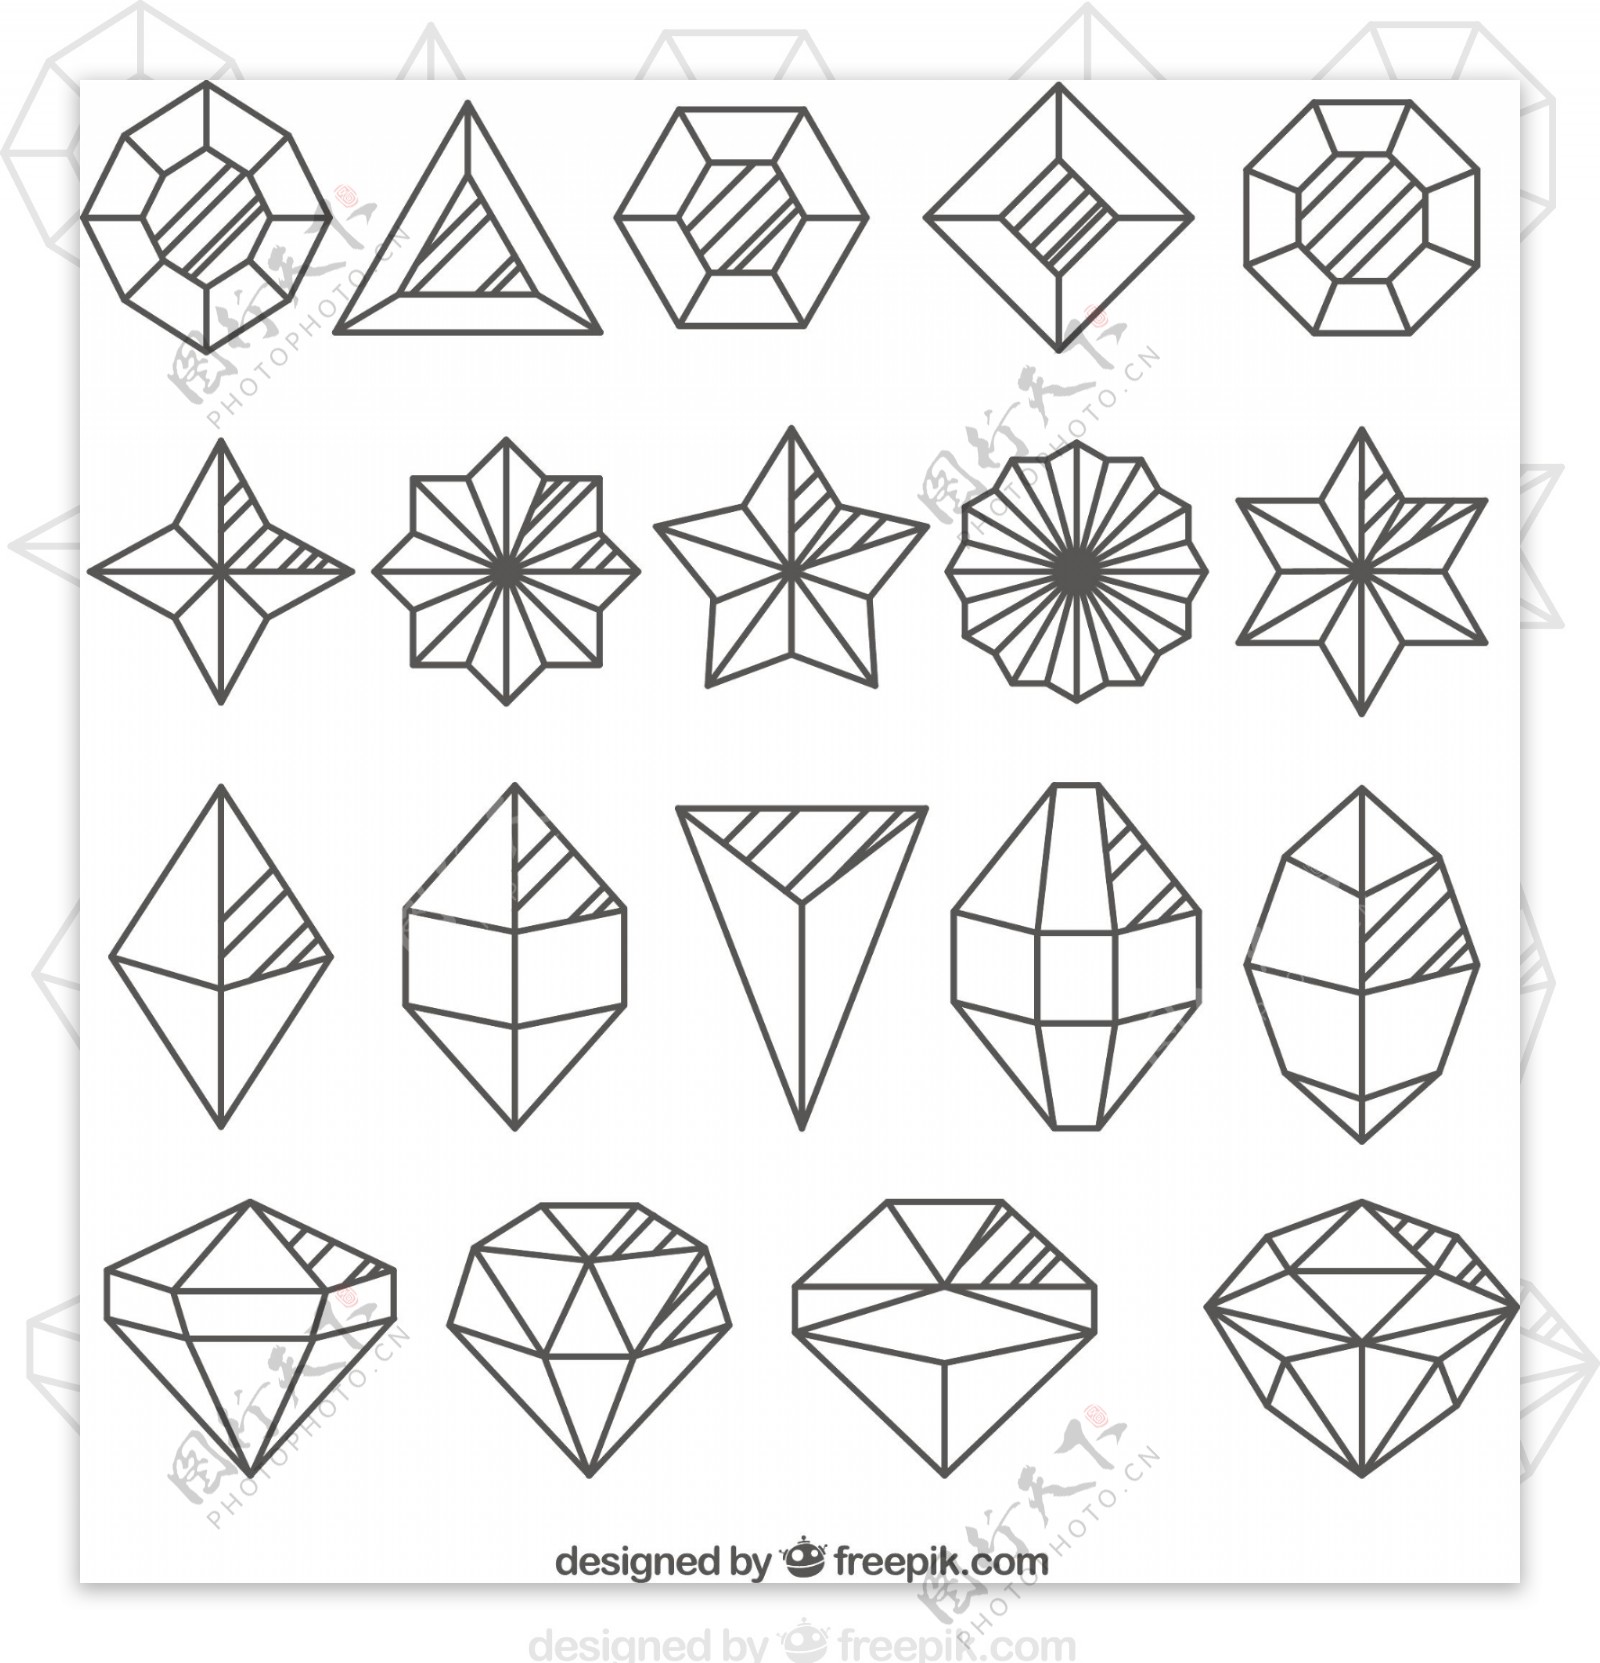 各种形状的钻石收藏